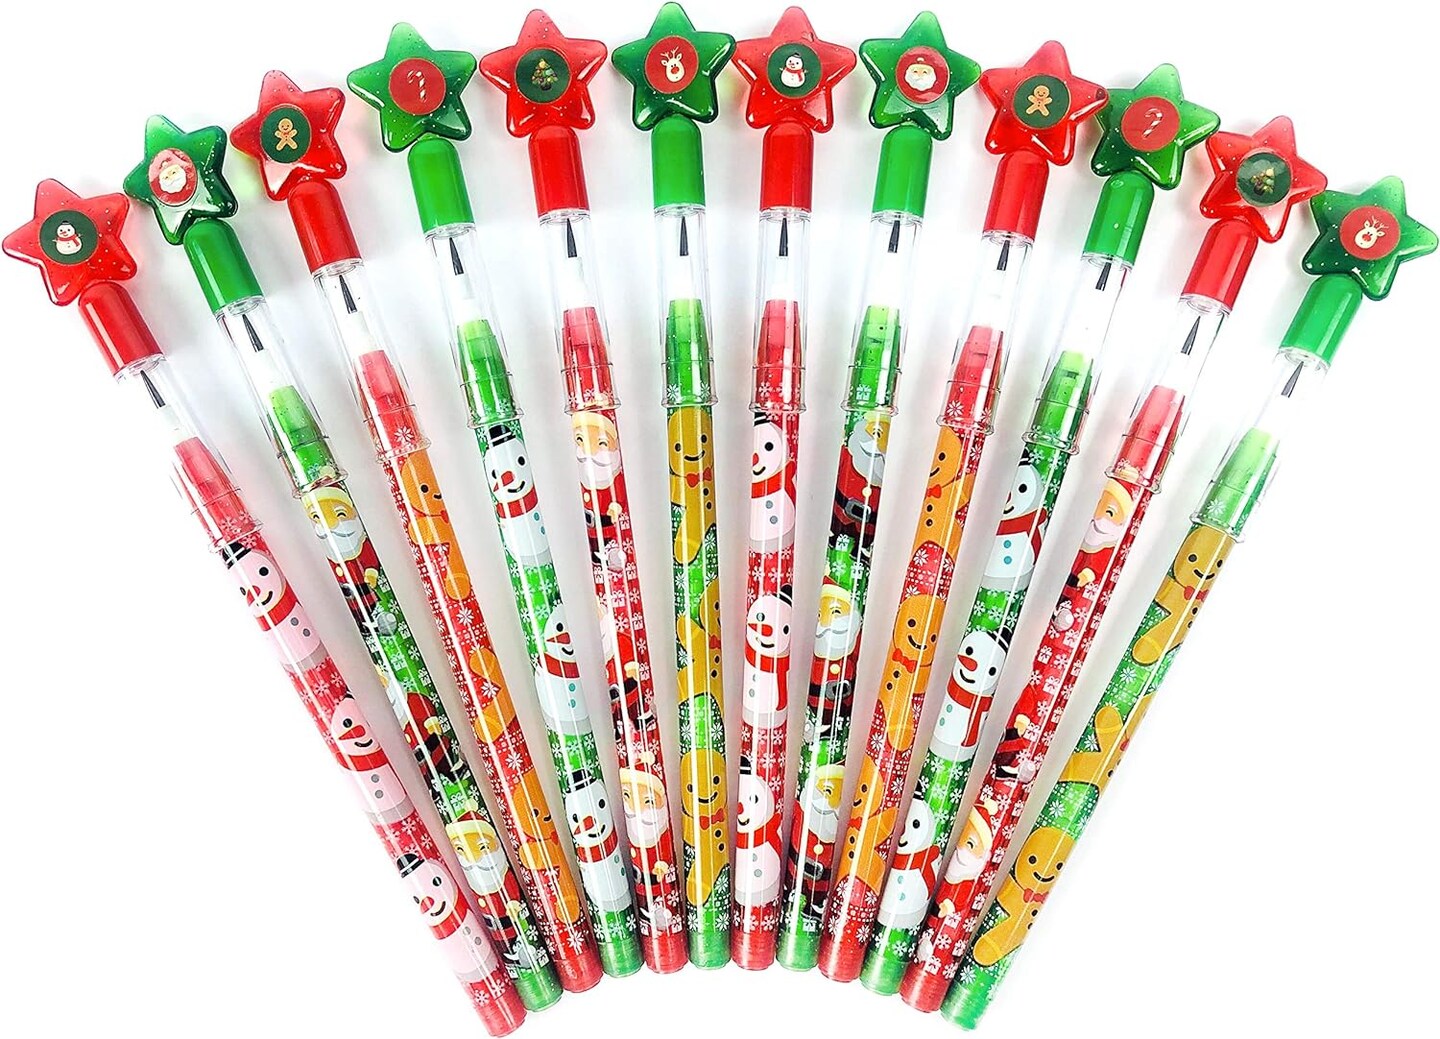 Qilery 24 Pcs Christmas Pencils Multi Point Stackable Push Pencils